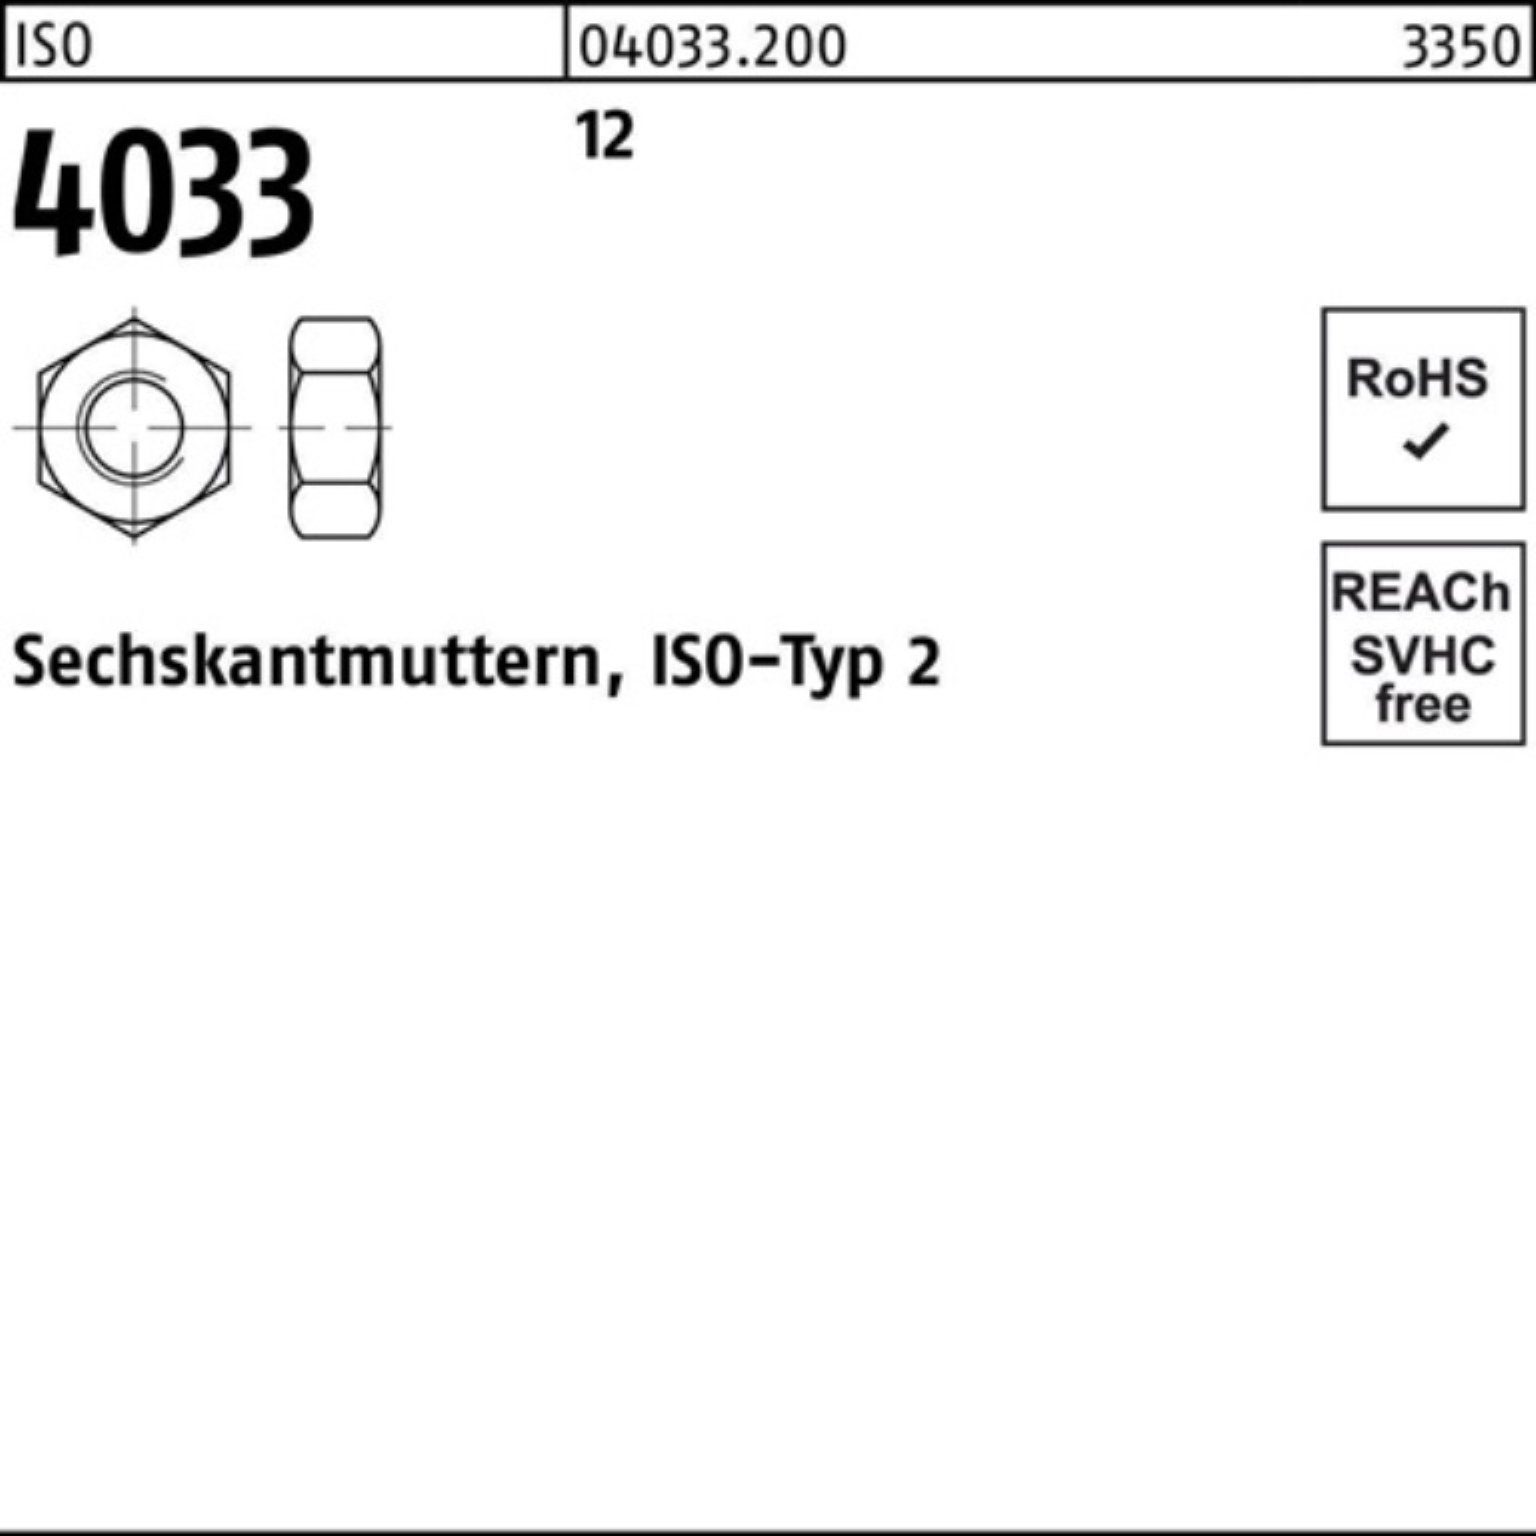 M20 12 4033 12 Sechskantmutter Sechs 50 Stück Muttern 4033 100er ISO Pack Reyher ISO